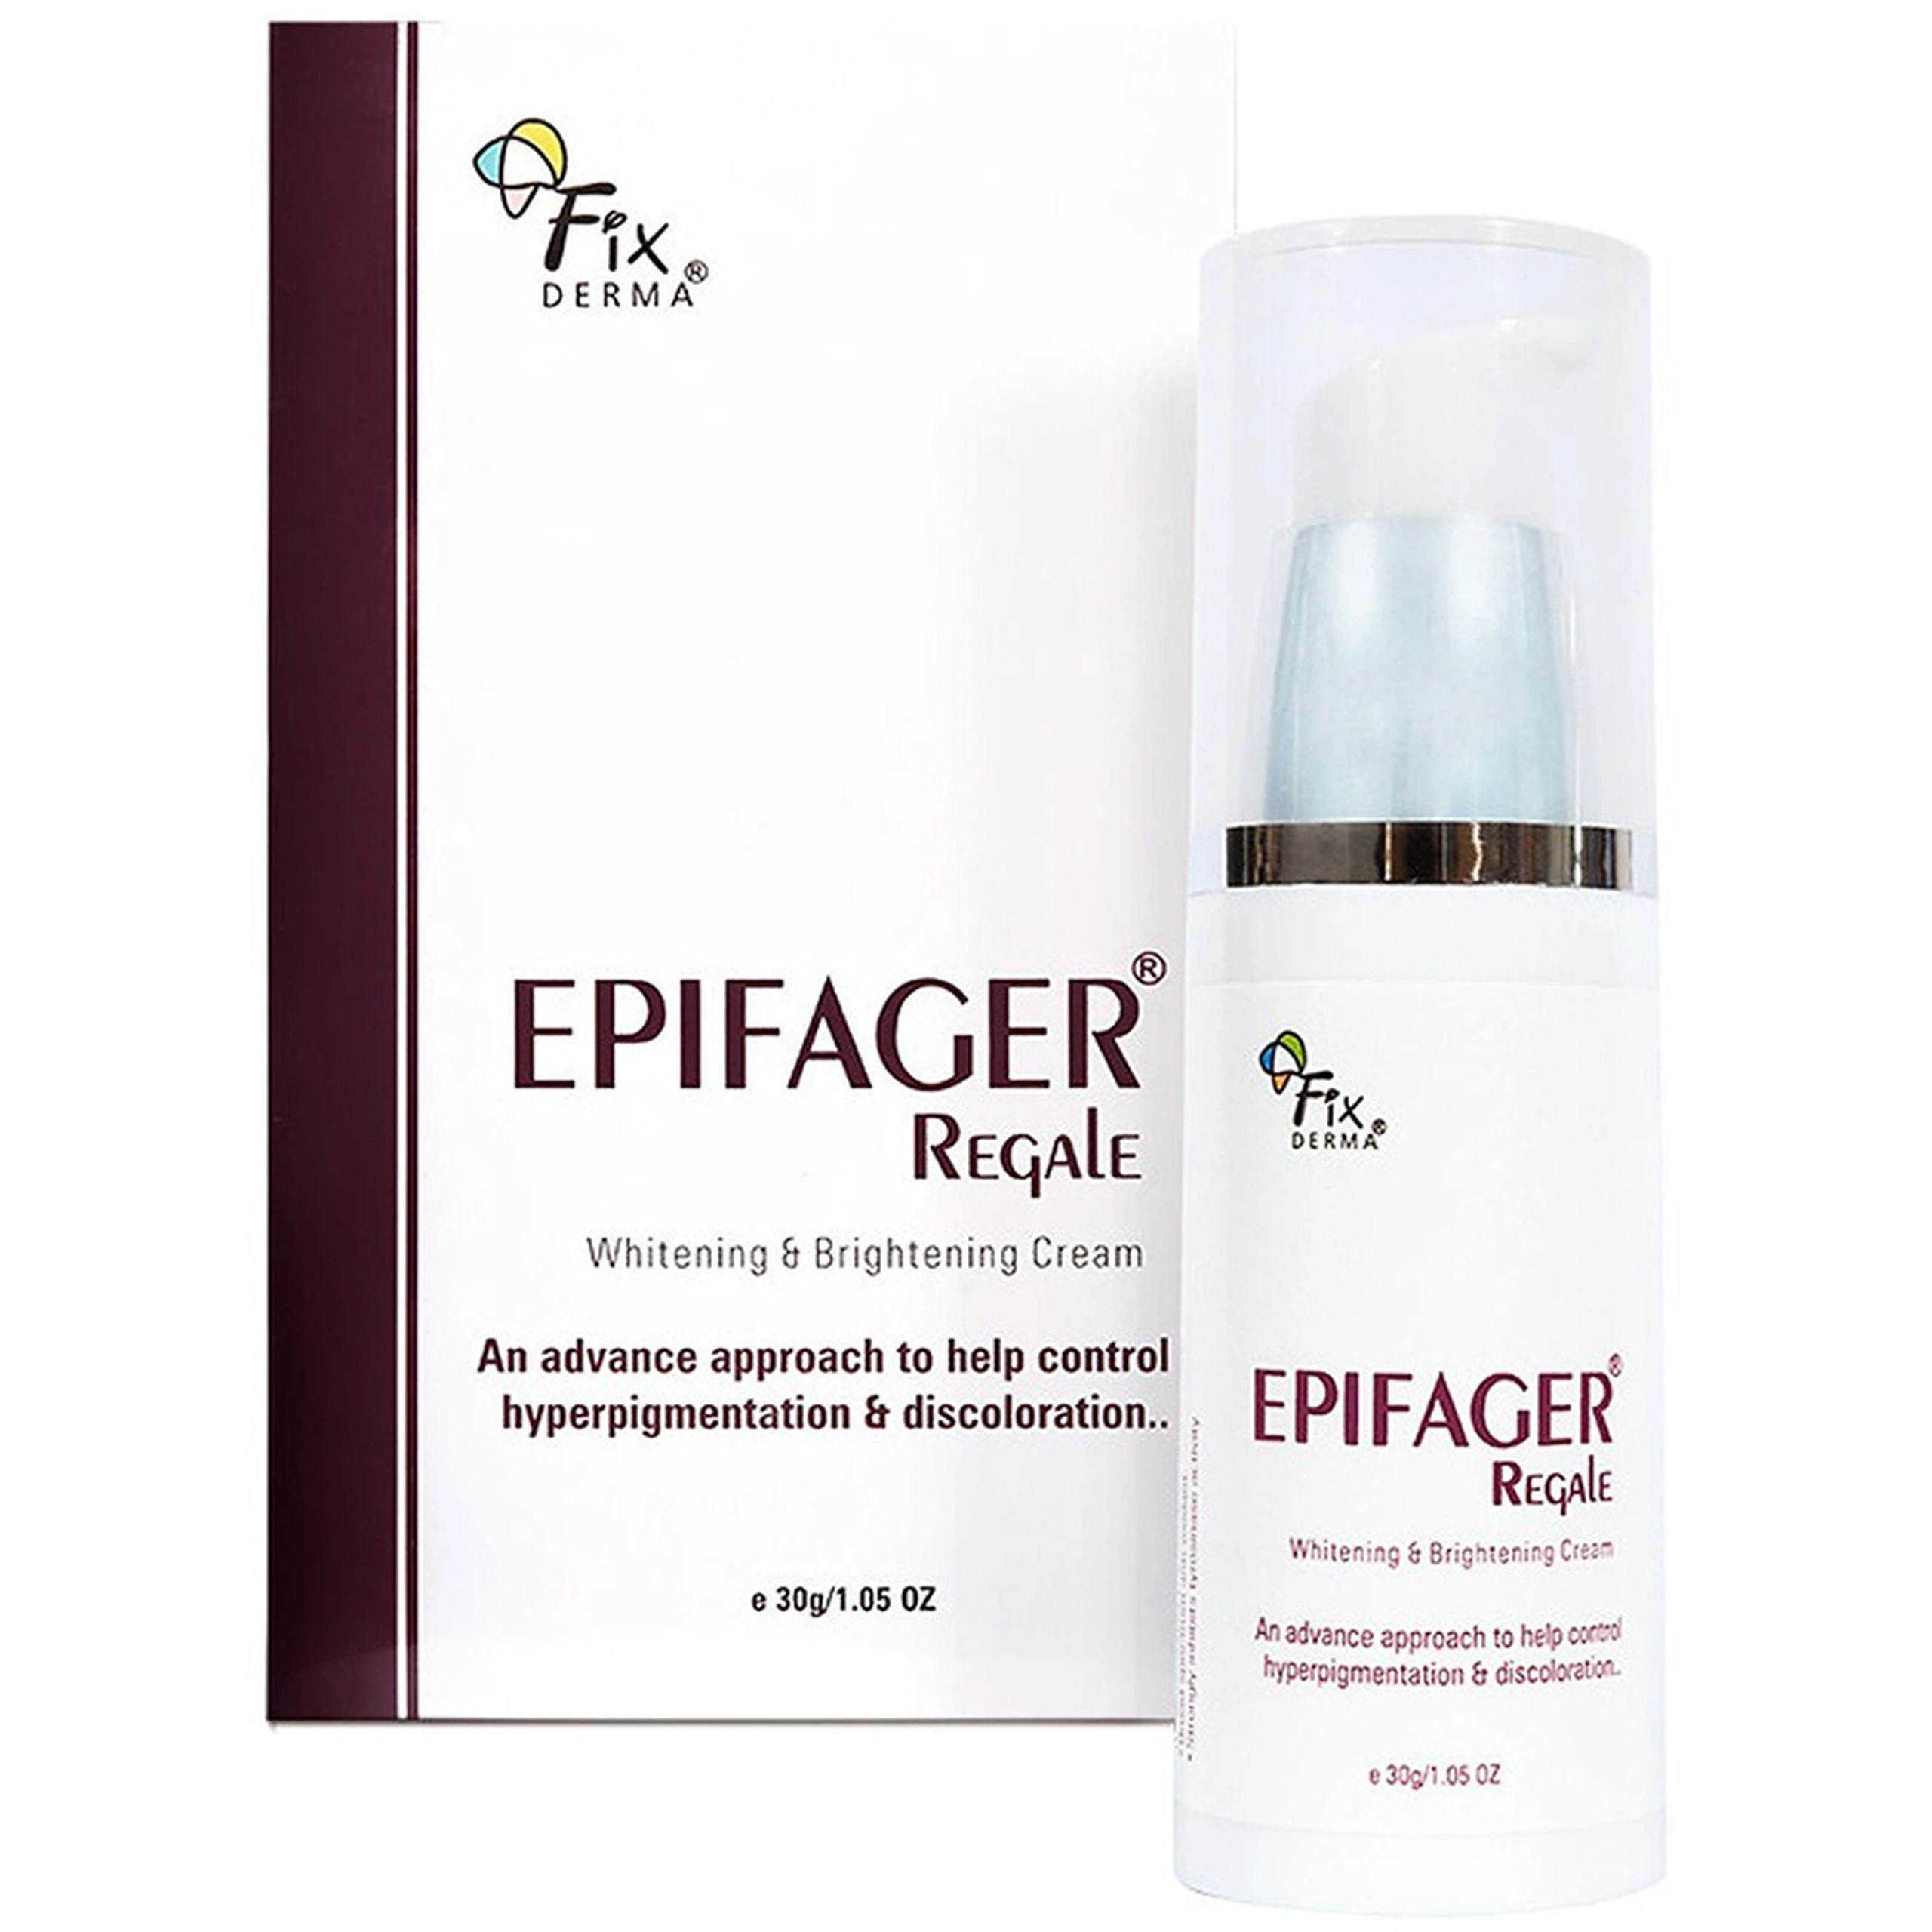 Kem dưỡng Fixderma Epifager Regale giảm sắc tố melanin, mờ vết thâm, đốm đen, vết nám, tàn nhang (30g)